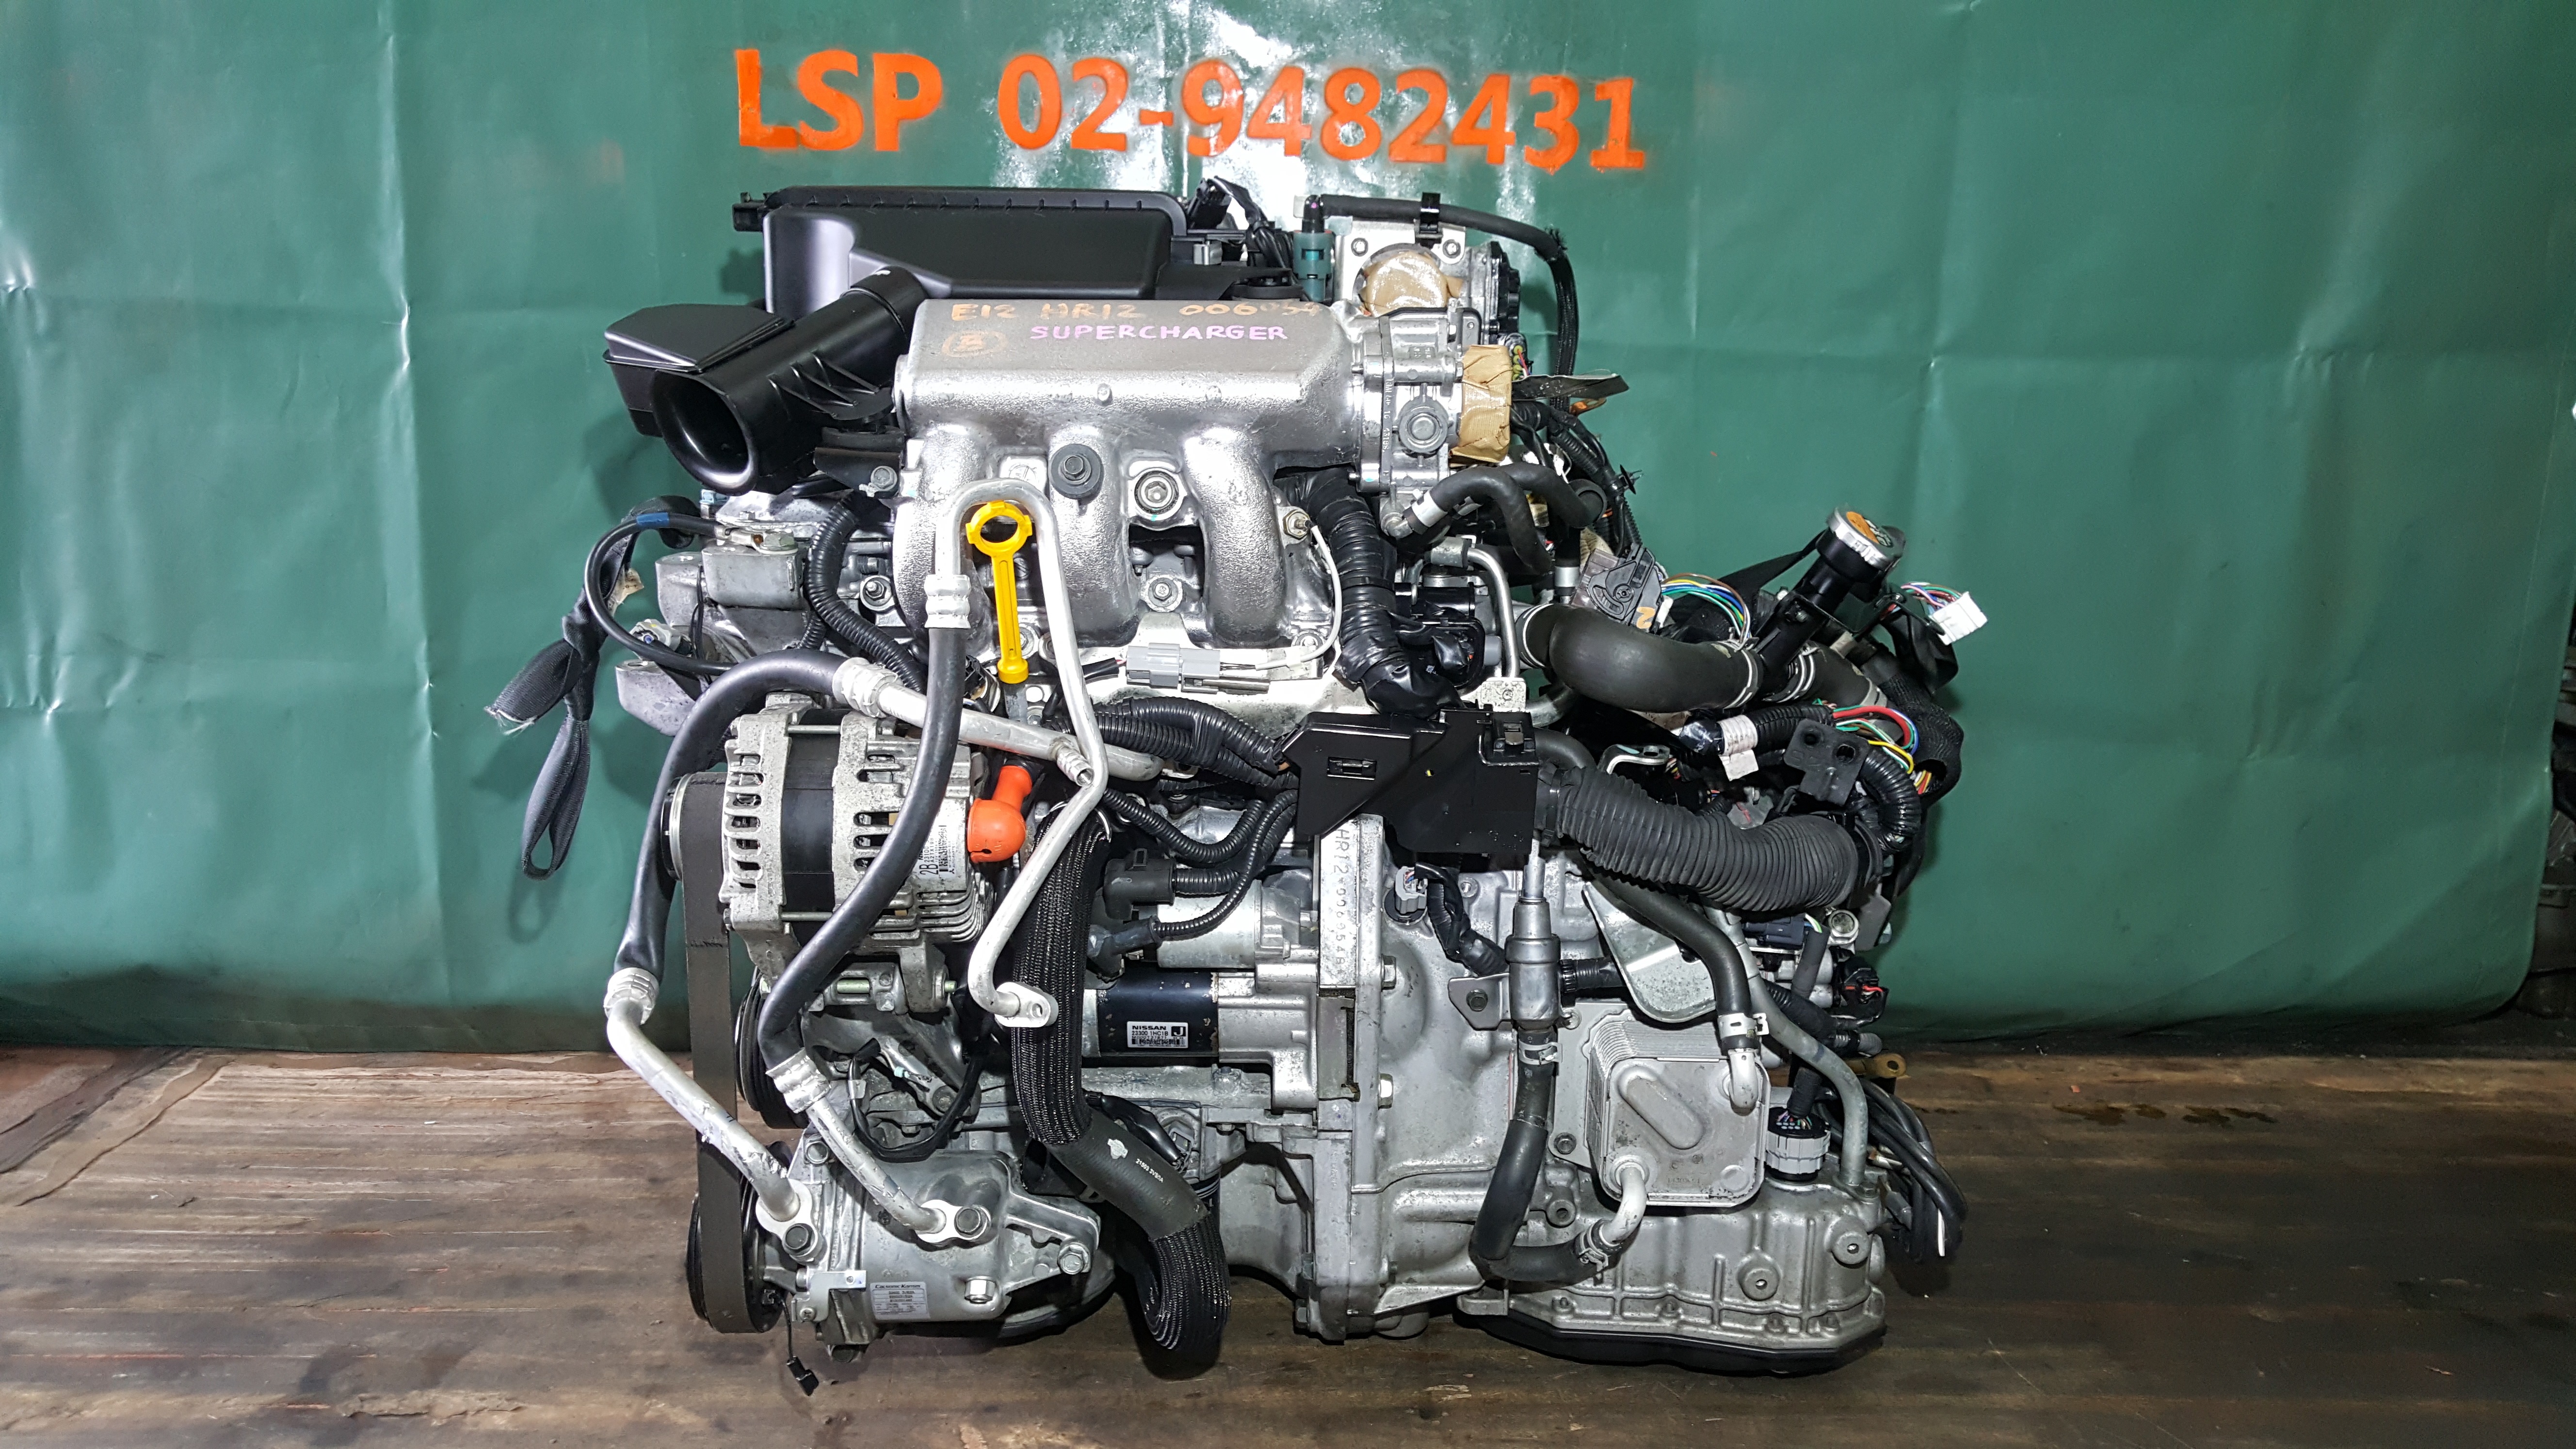 Mr16ddt 1.6 dig-t gdi 163/190/218 л.с – обзор двигателя nissan (ниссан кашкай/жук/х-трейл): ресурс, характеристики, надежность, расход, проблемы и сервис